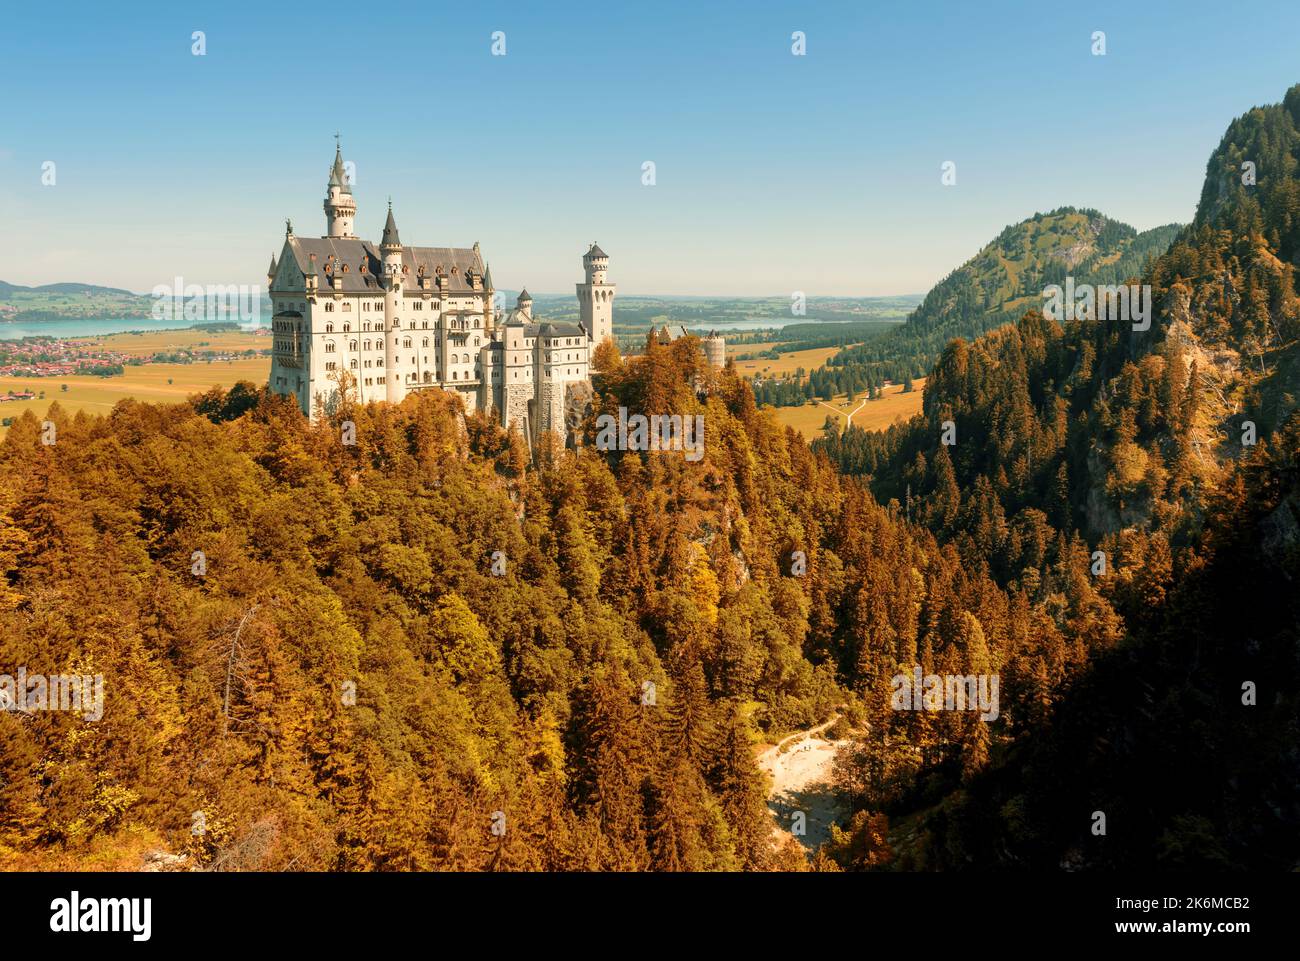 Schloss Neuschwanstein bei Füssen, Deutschland, Europa. Landschaft mit altem deutschen Schloss auf Berggipfel im Herbst. Es ist ein berühmtes Wahrzeichen in München vicini Stockfoto